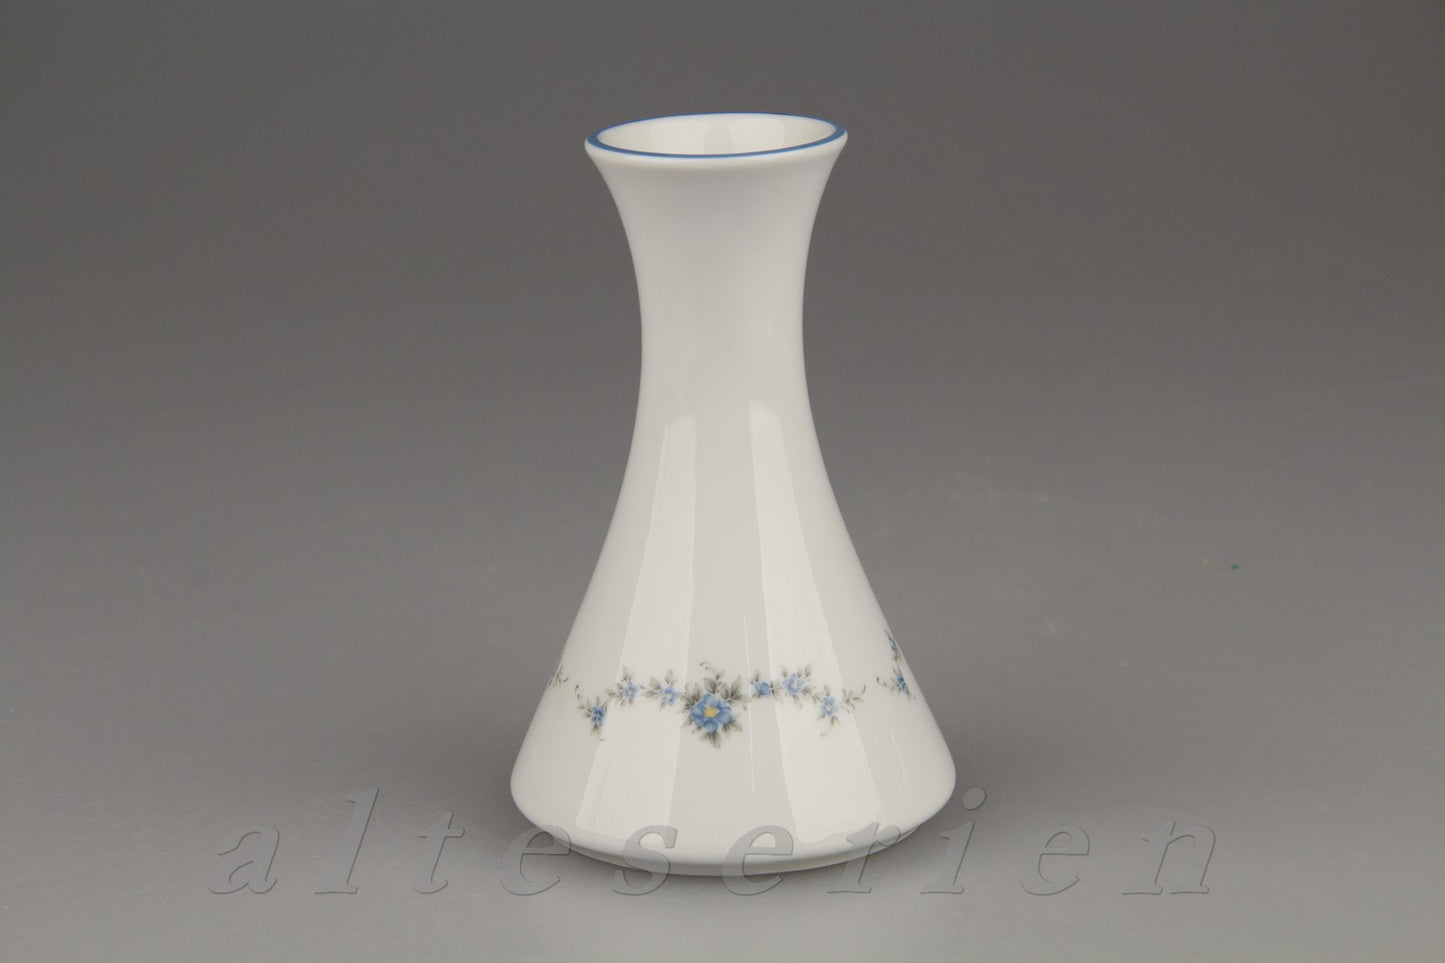 Vase klein - runde Form